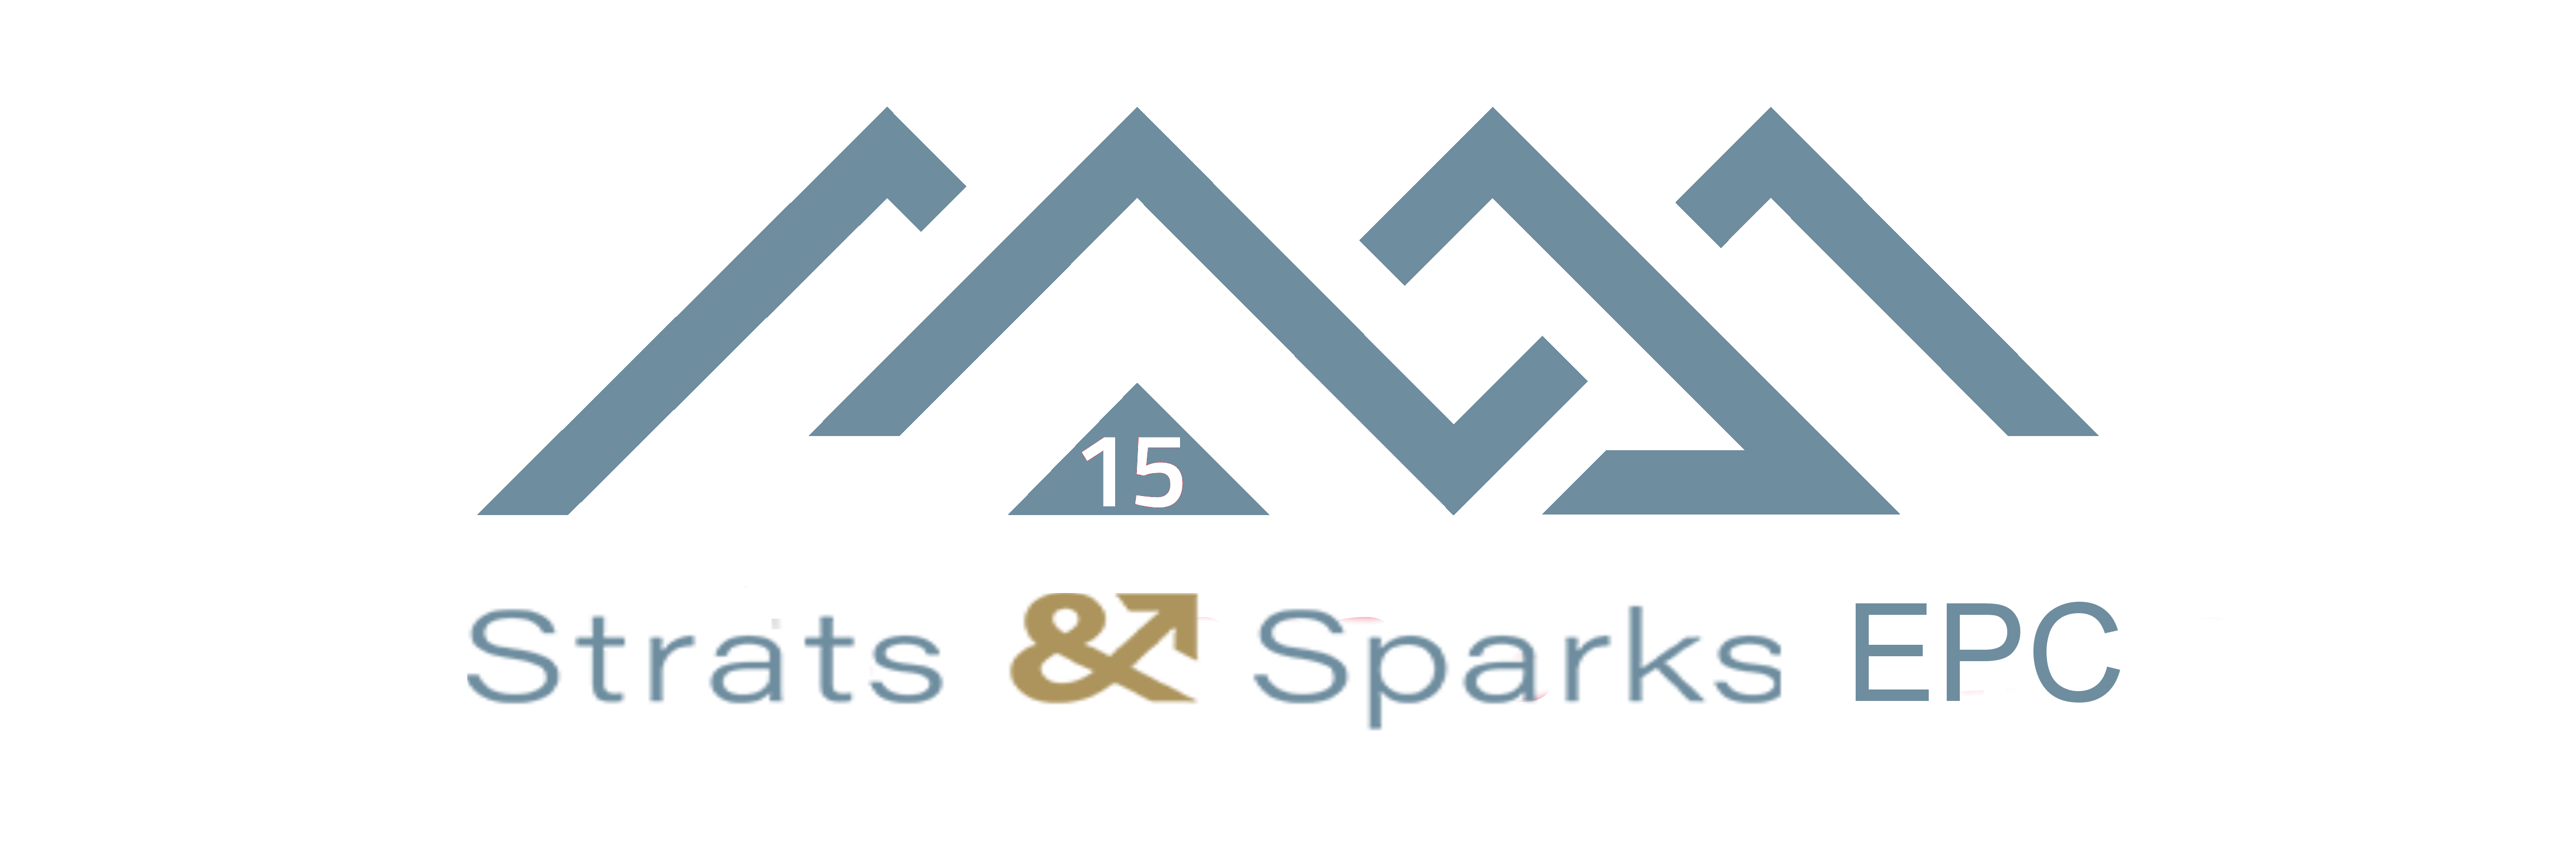 15. Strats & Sparks Elm Peaks Challenge